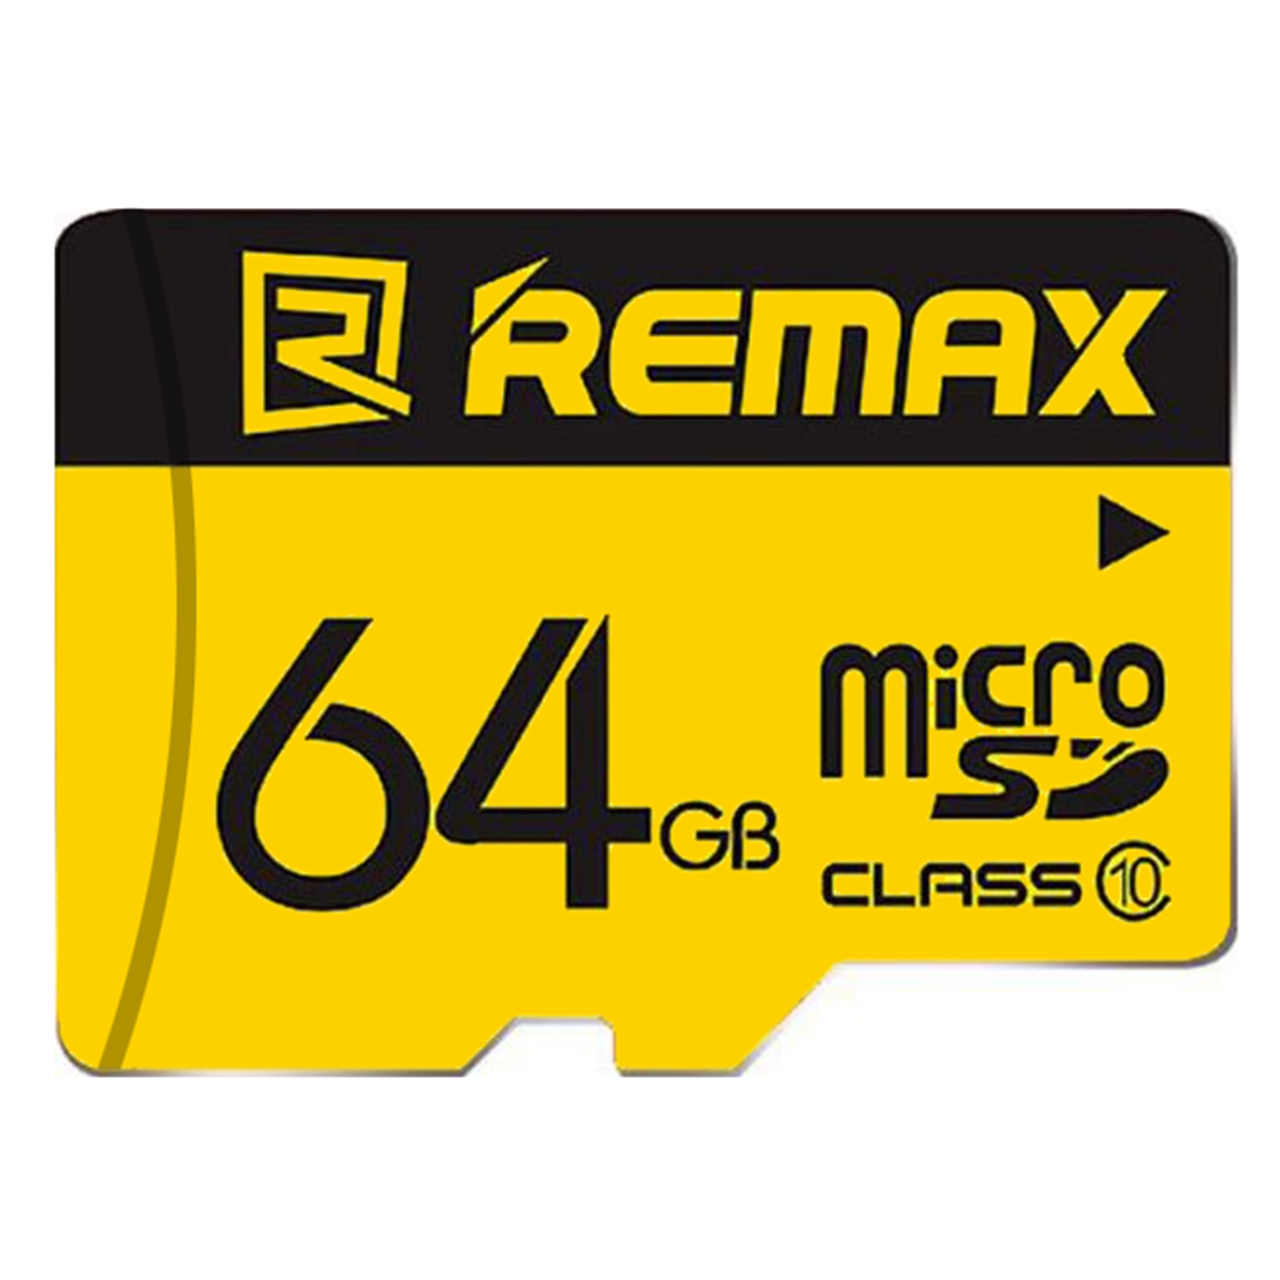 کارت حافظه microSDHC ریمکس کلاس 10 استاندارد UHS-I سرعت 80MBps ظرفیت 64 گیگابایت